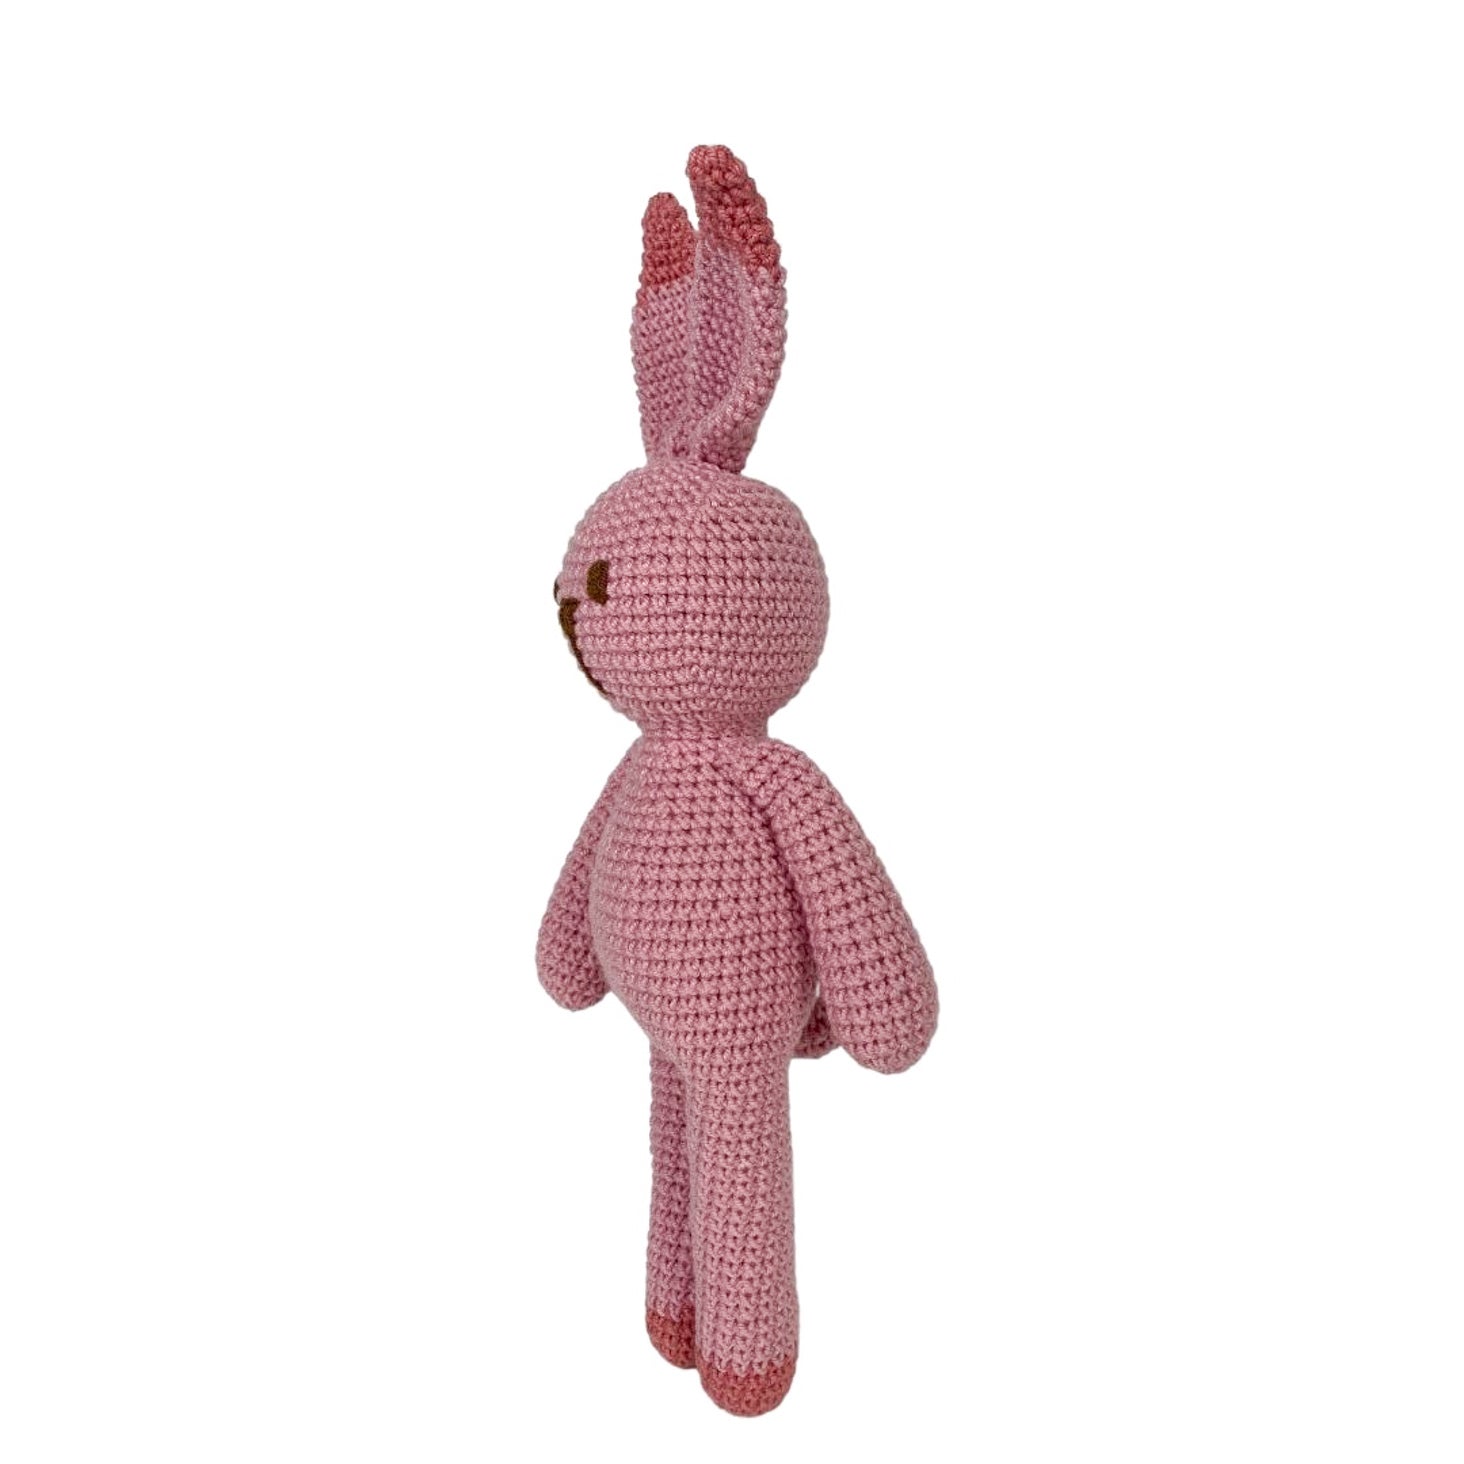 Pink Bunny Crochet Stuffed Animal